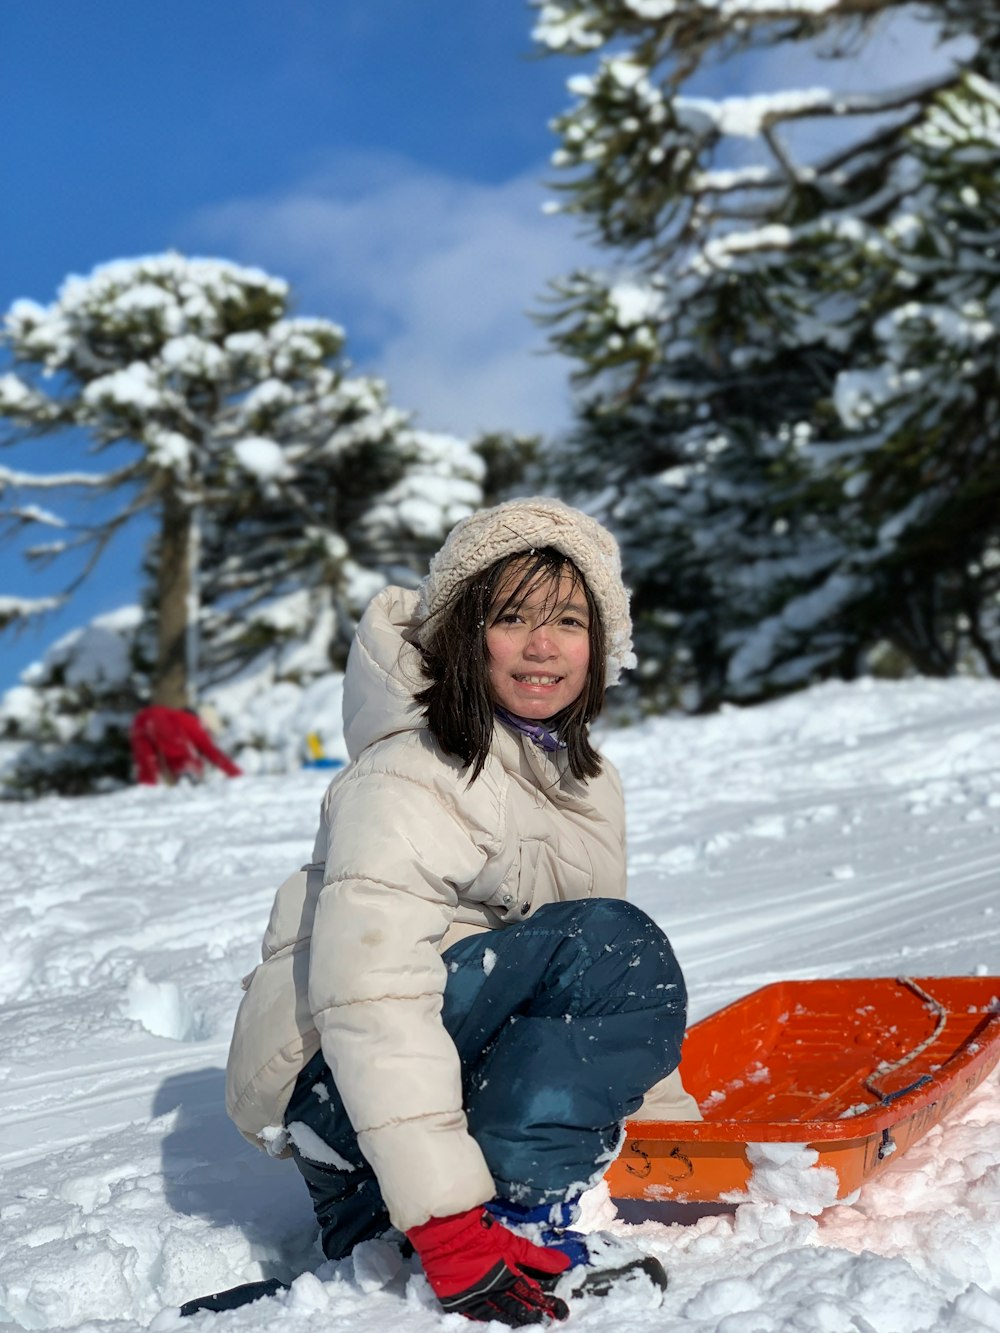 Frau in grauer Jacke und blauer Hose sitzt tagsüber auf schneebedecktem Boden